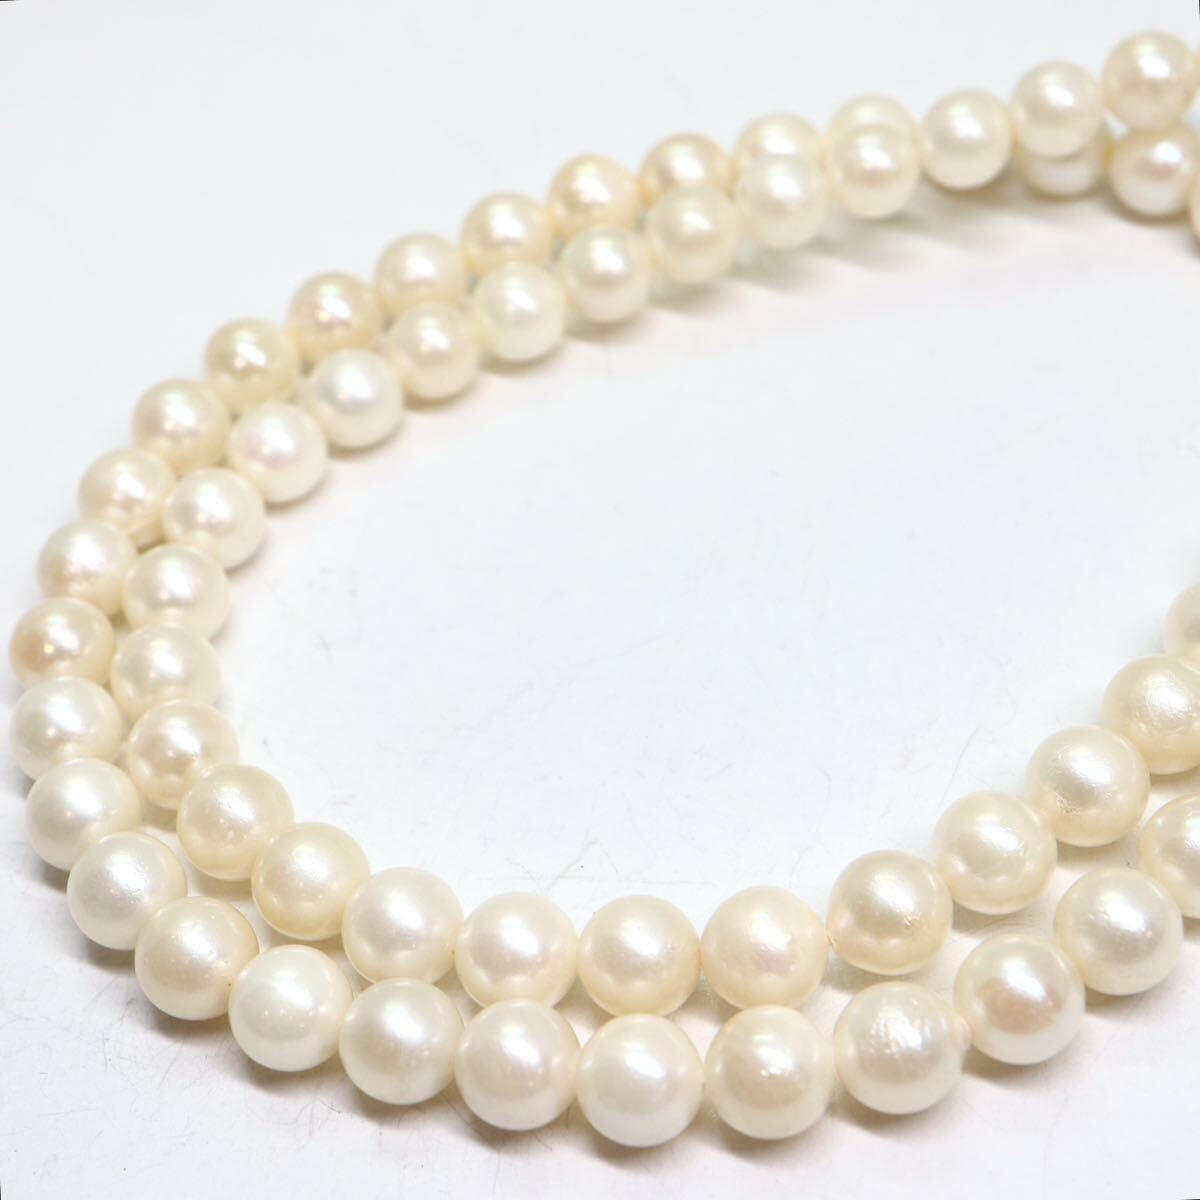 《アコヤ本真珠ネックレス》A 約5.5-6.0mm珠 21.8g 約41.5cm pearl necklace ジュエリー jewelry DA0/DC0の画像4